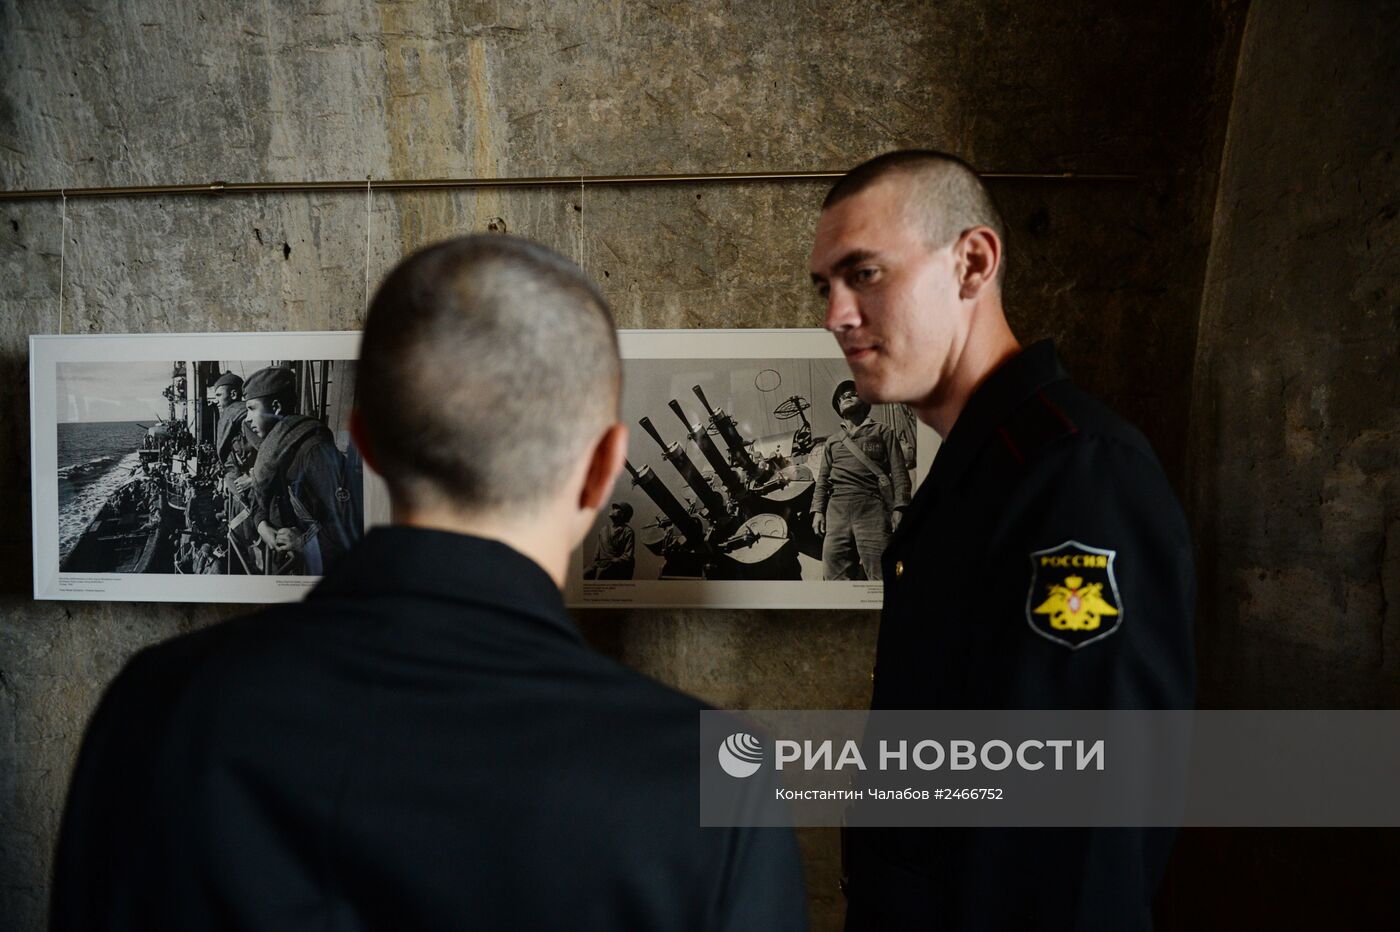 Фотовыставка "Армия и флот России" в Севастополе